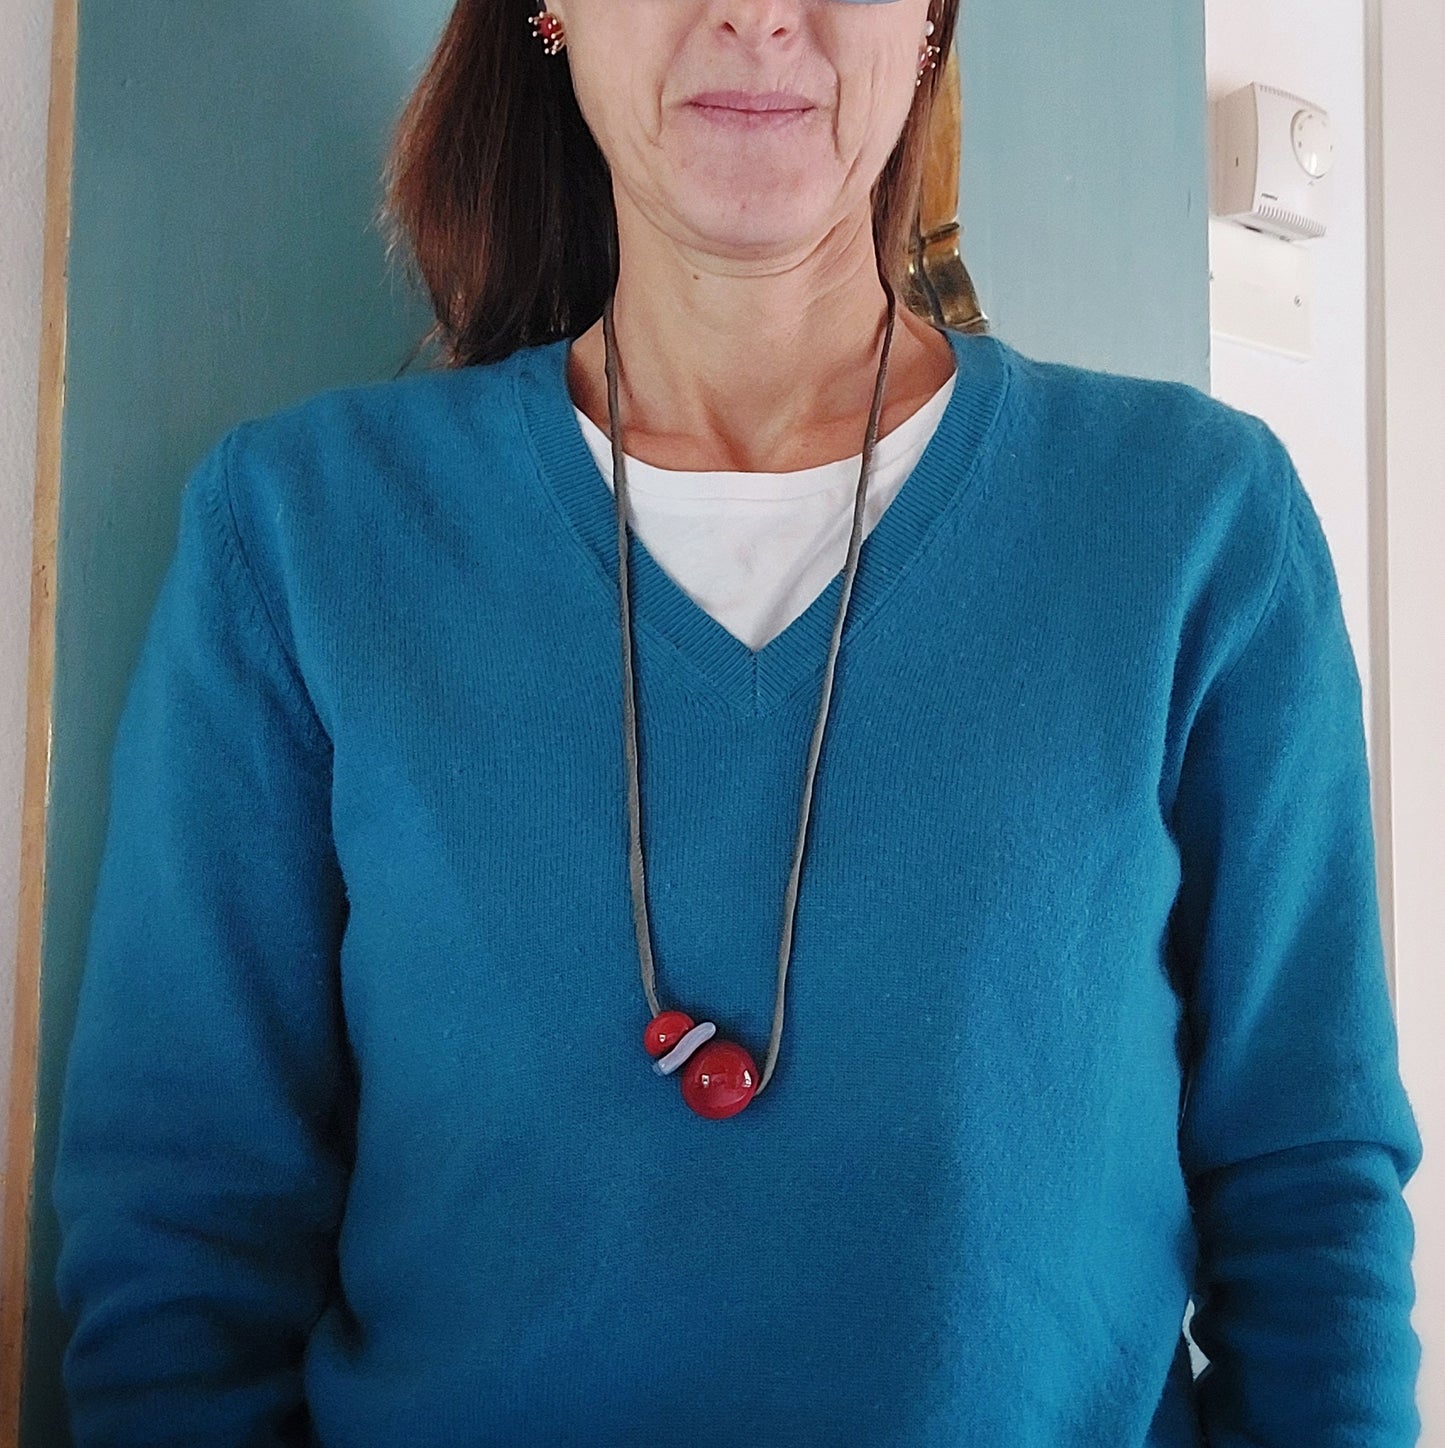 Collana da donna con tre perle in ceramica rossa e azzurra con laccio in seta